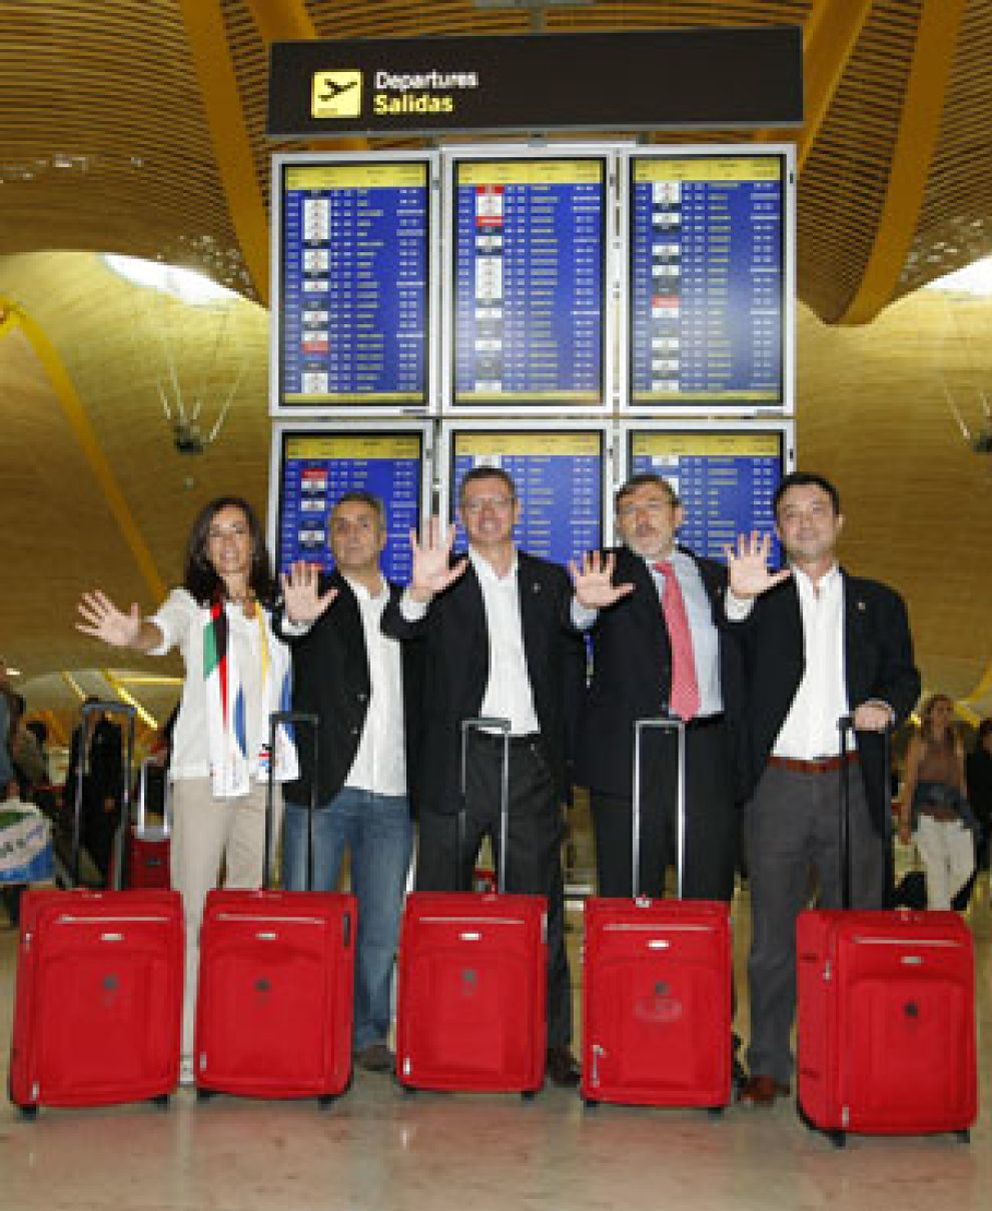 Foto: Gallardón reparte maletas, vino y jamón a su séquito en Copenhague